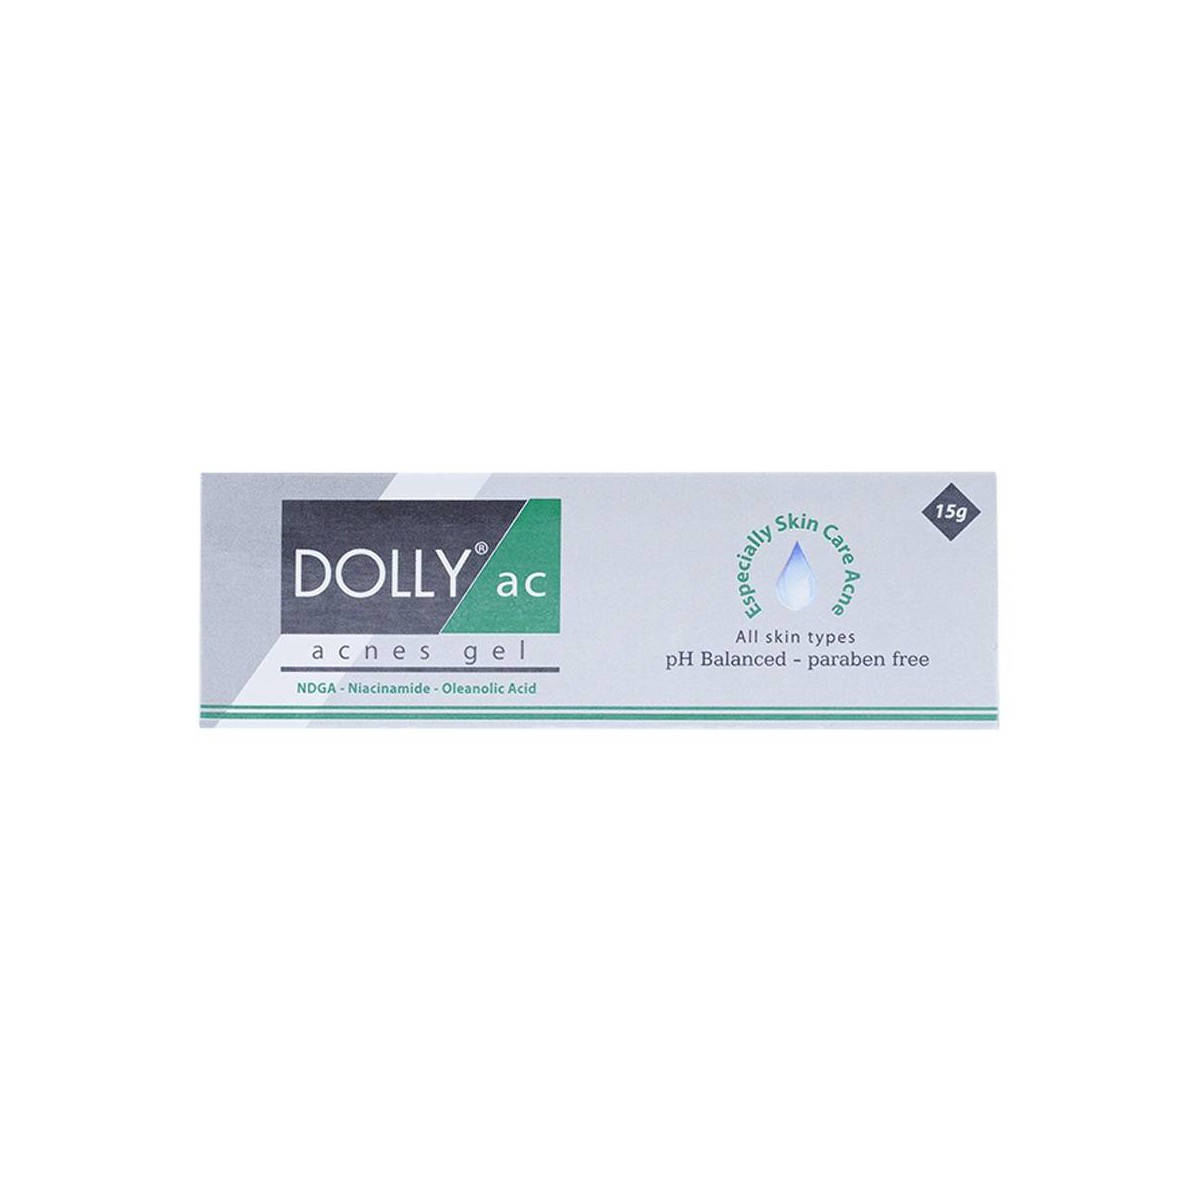 00010667 acnes 15g dollyac 9621 5b16 large 5 nhà thuốc medilive